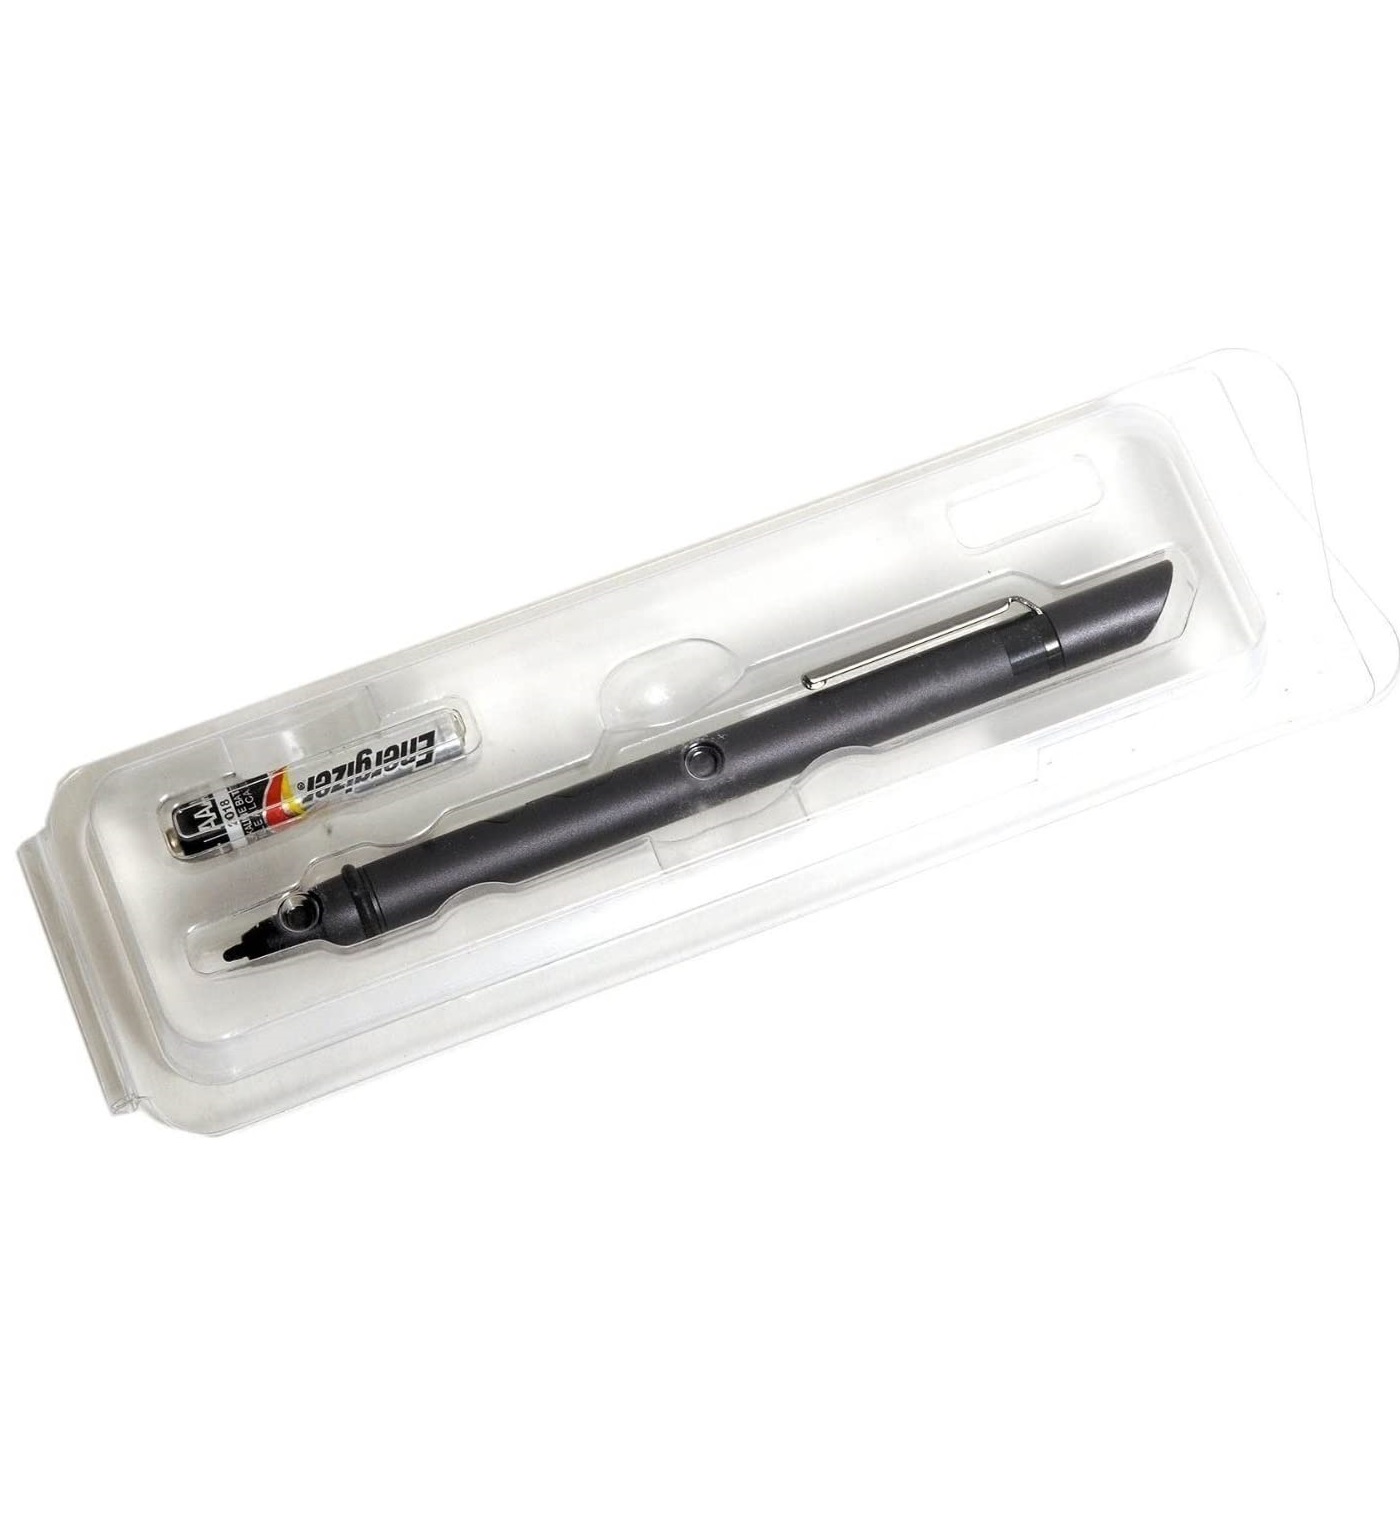 Sony Standard Interactive Stylus Pen (PEN-LE)